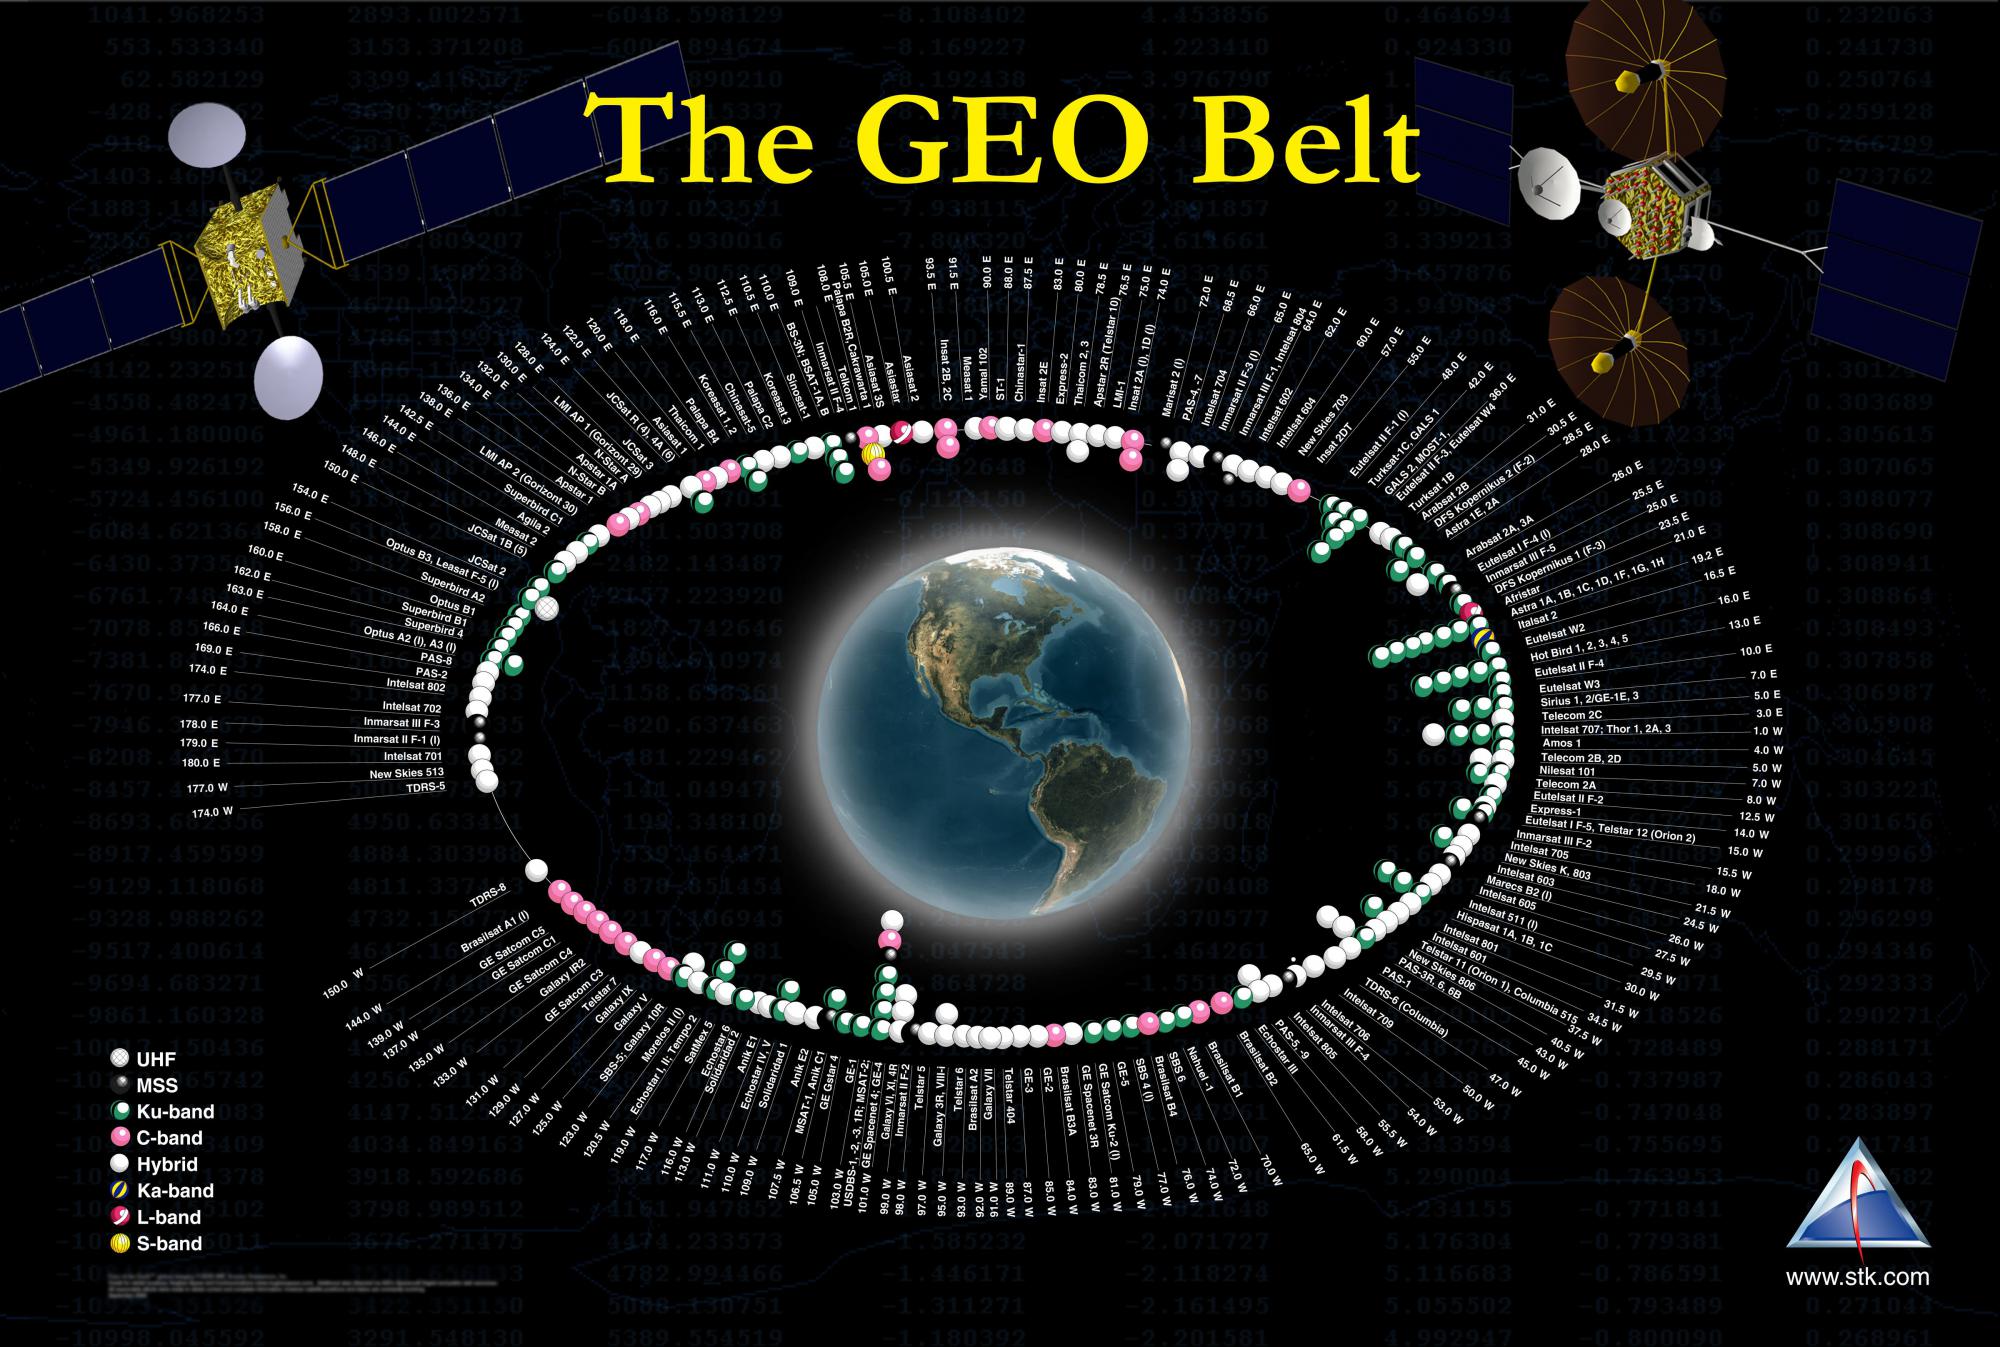 Спутниковое местоположение. Спутники на геостационарной орбите. Космические аппараты на геостационарной орбите. Расположение спутников на орбите. Расположение спутника на геостационарной орбите.